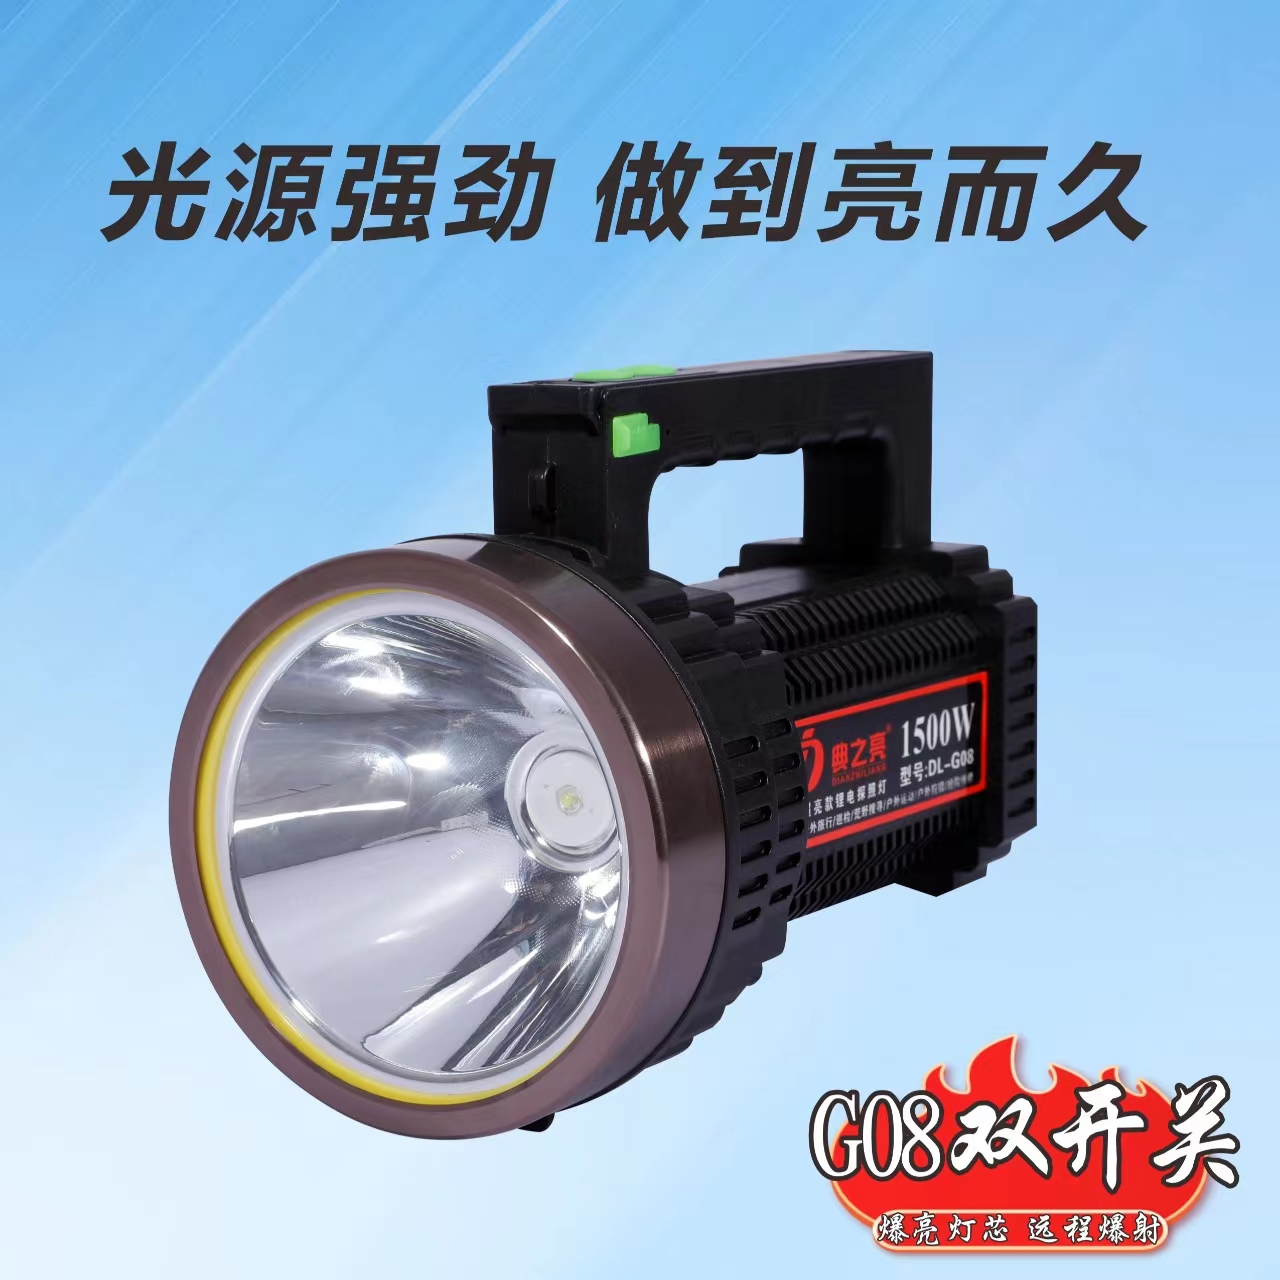 Super bright outdoor lighting flashlight